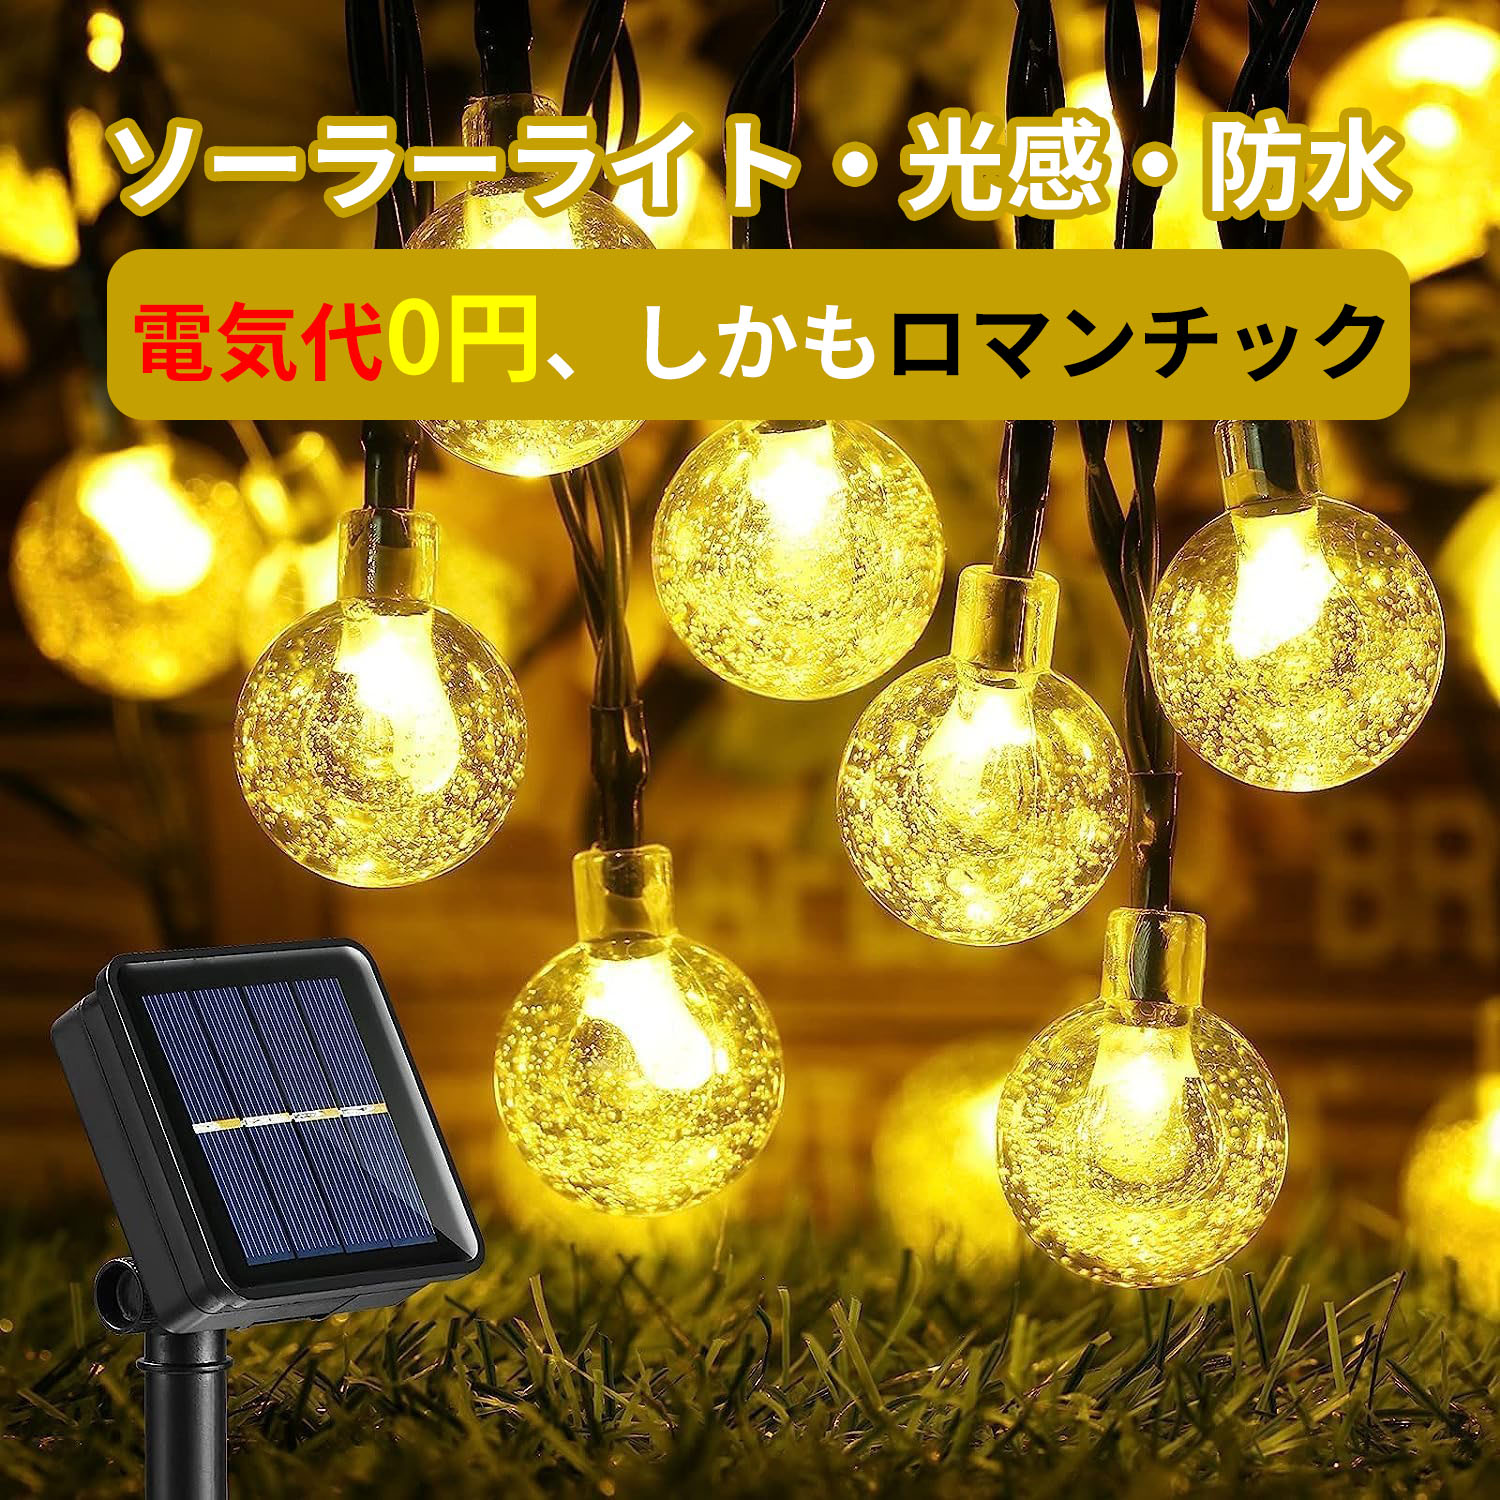 【新型大LED電球】 ソーラーライト L